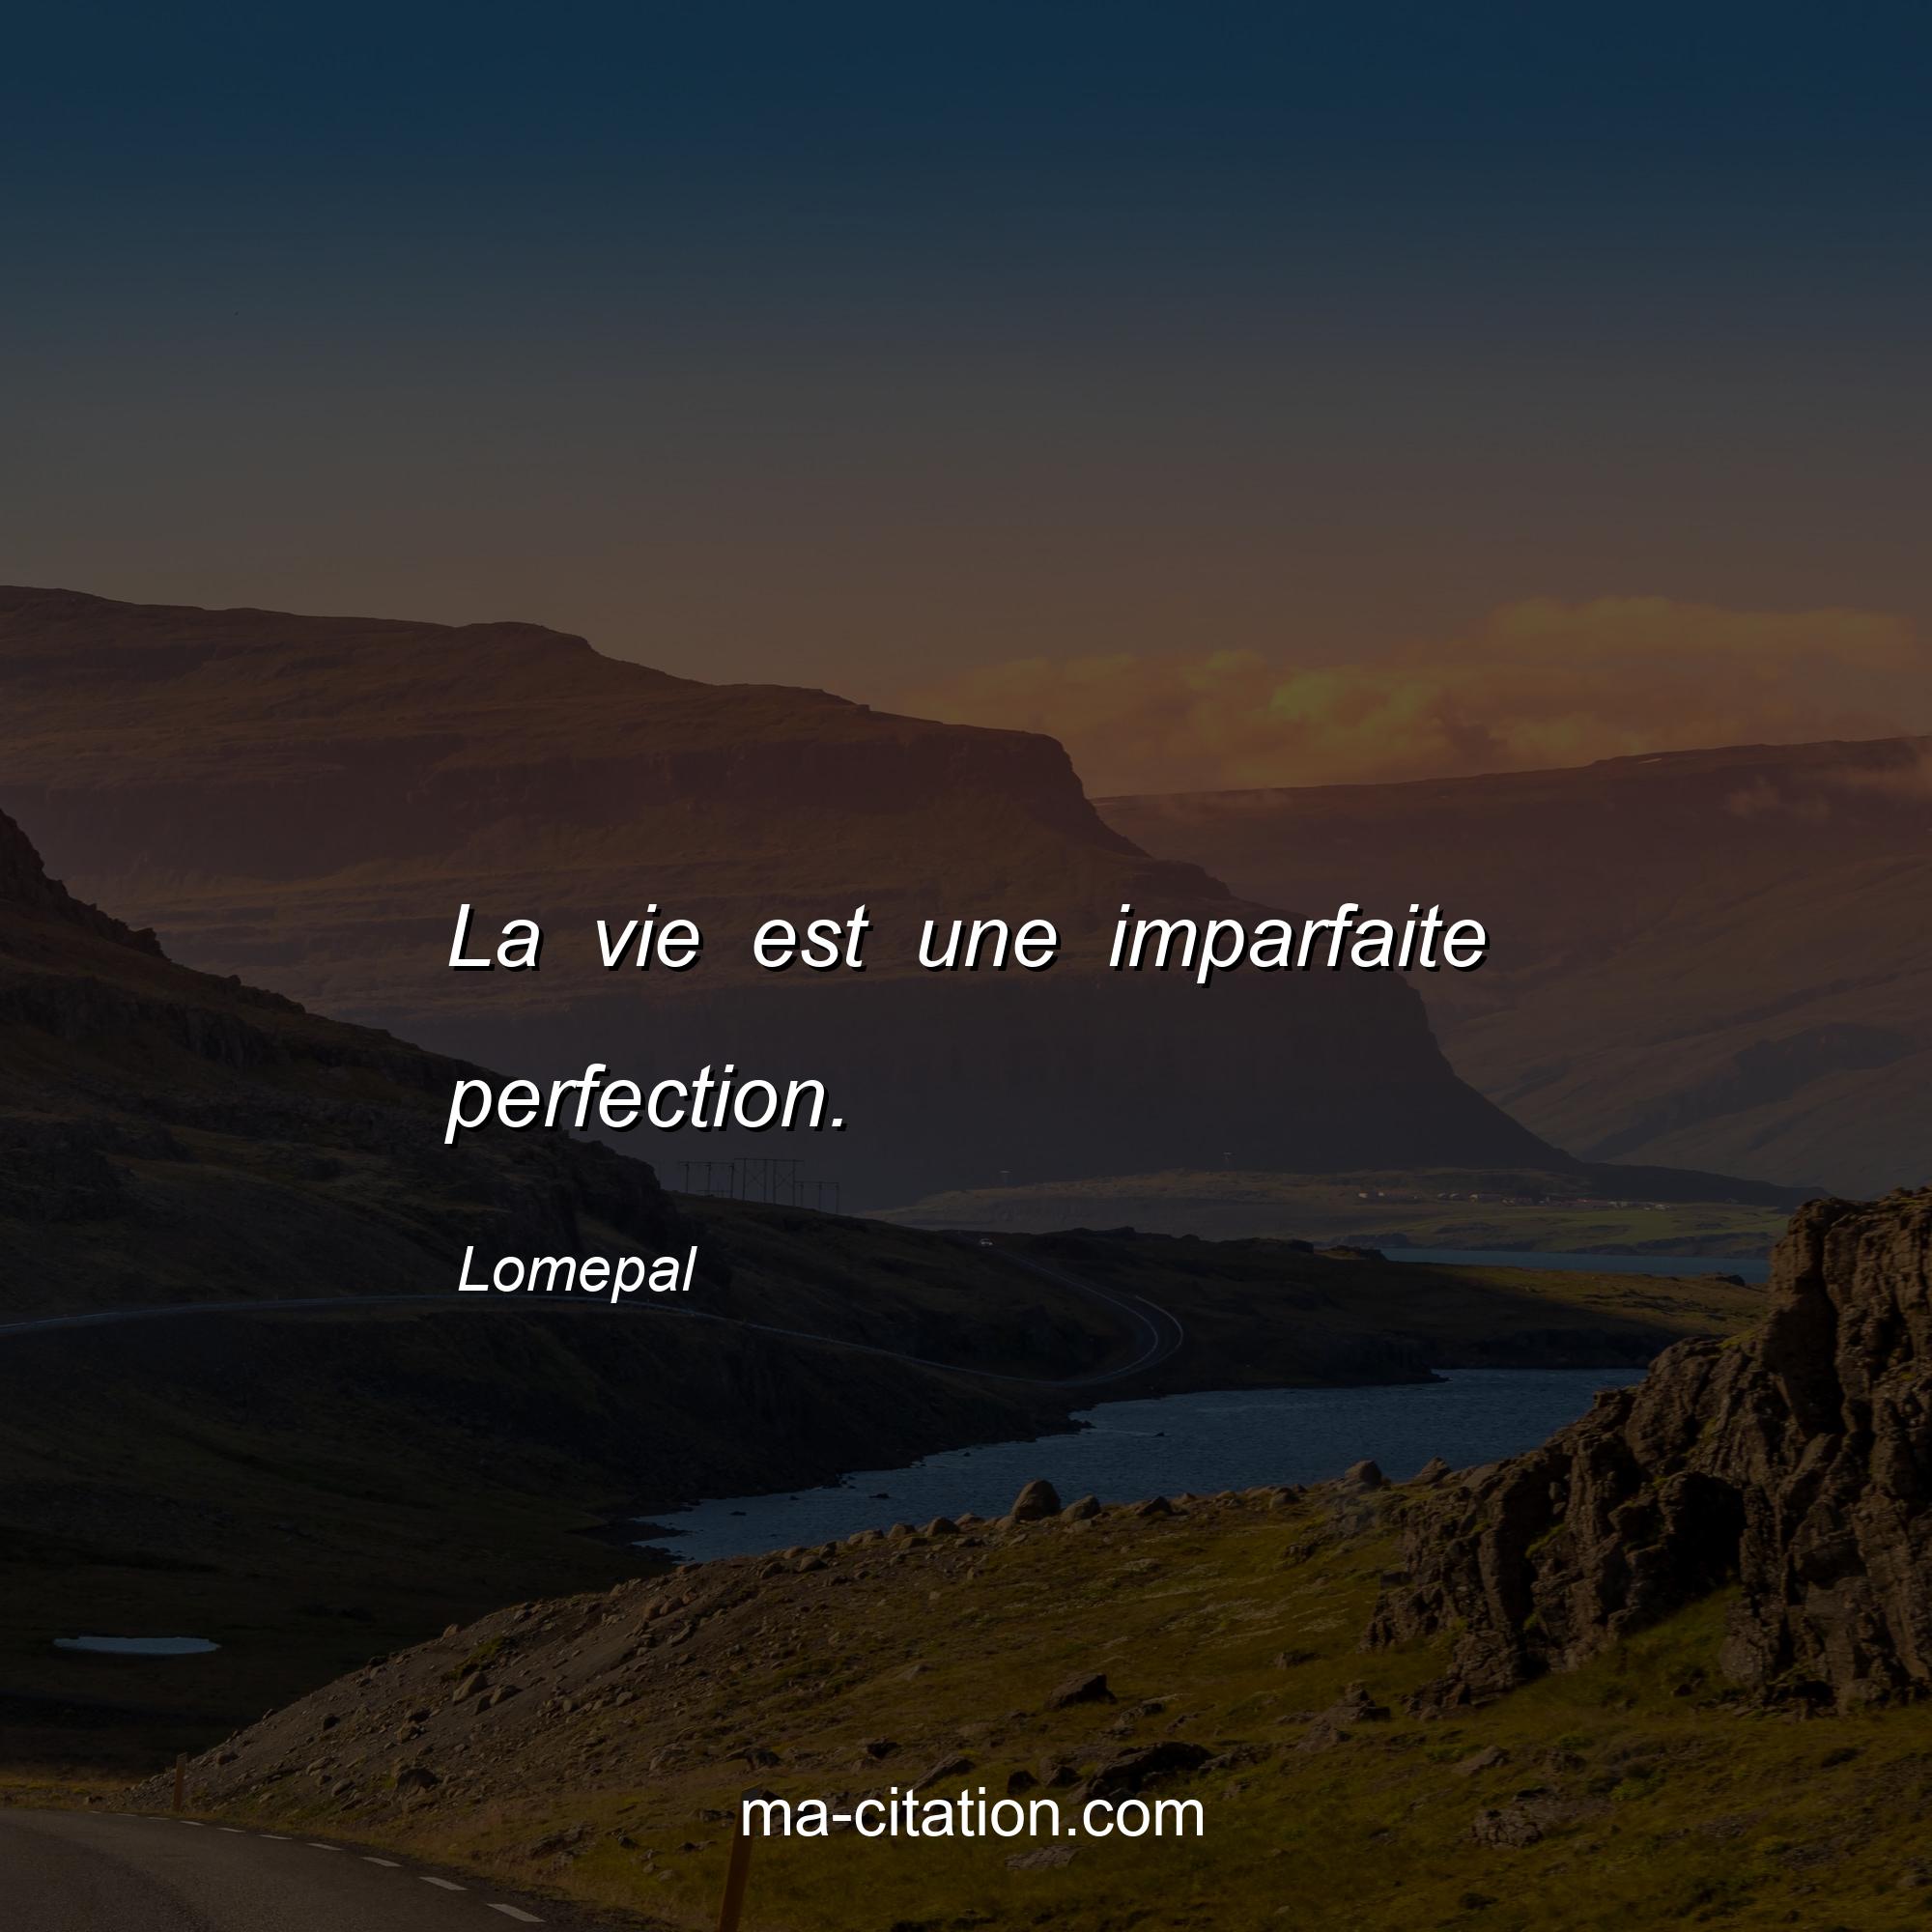 Lomepal : La vie est une imparfaite perfection.